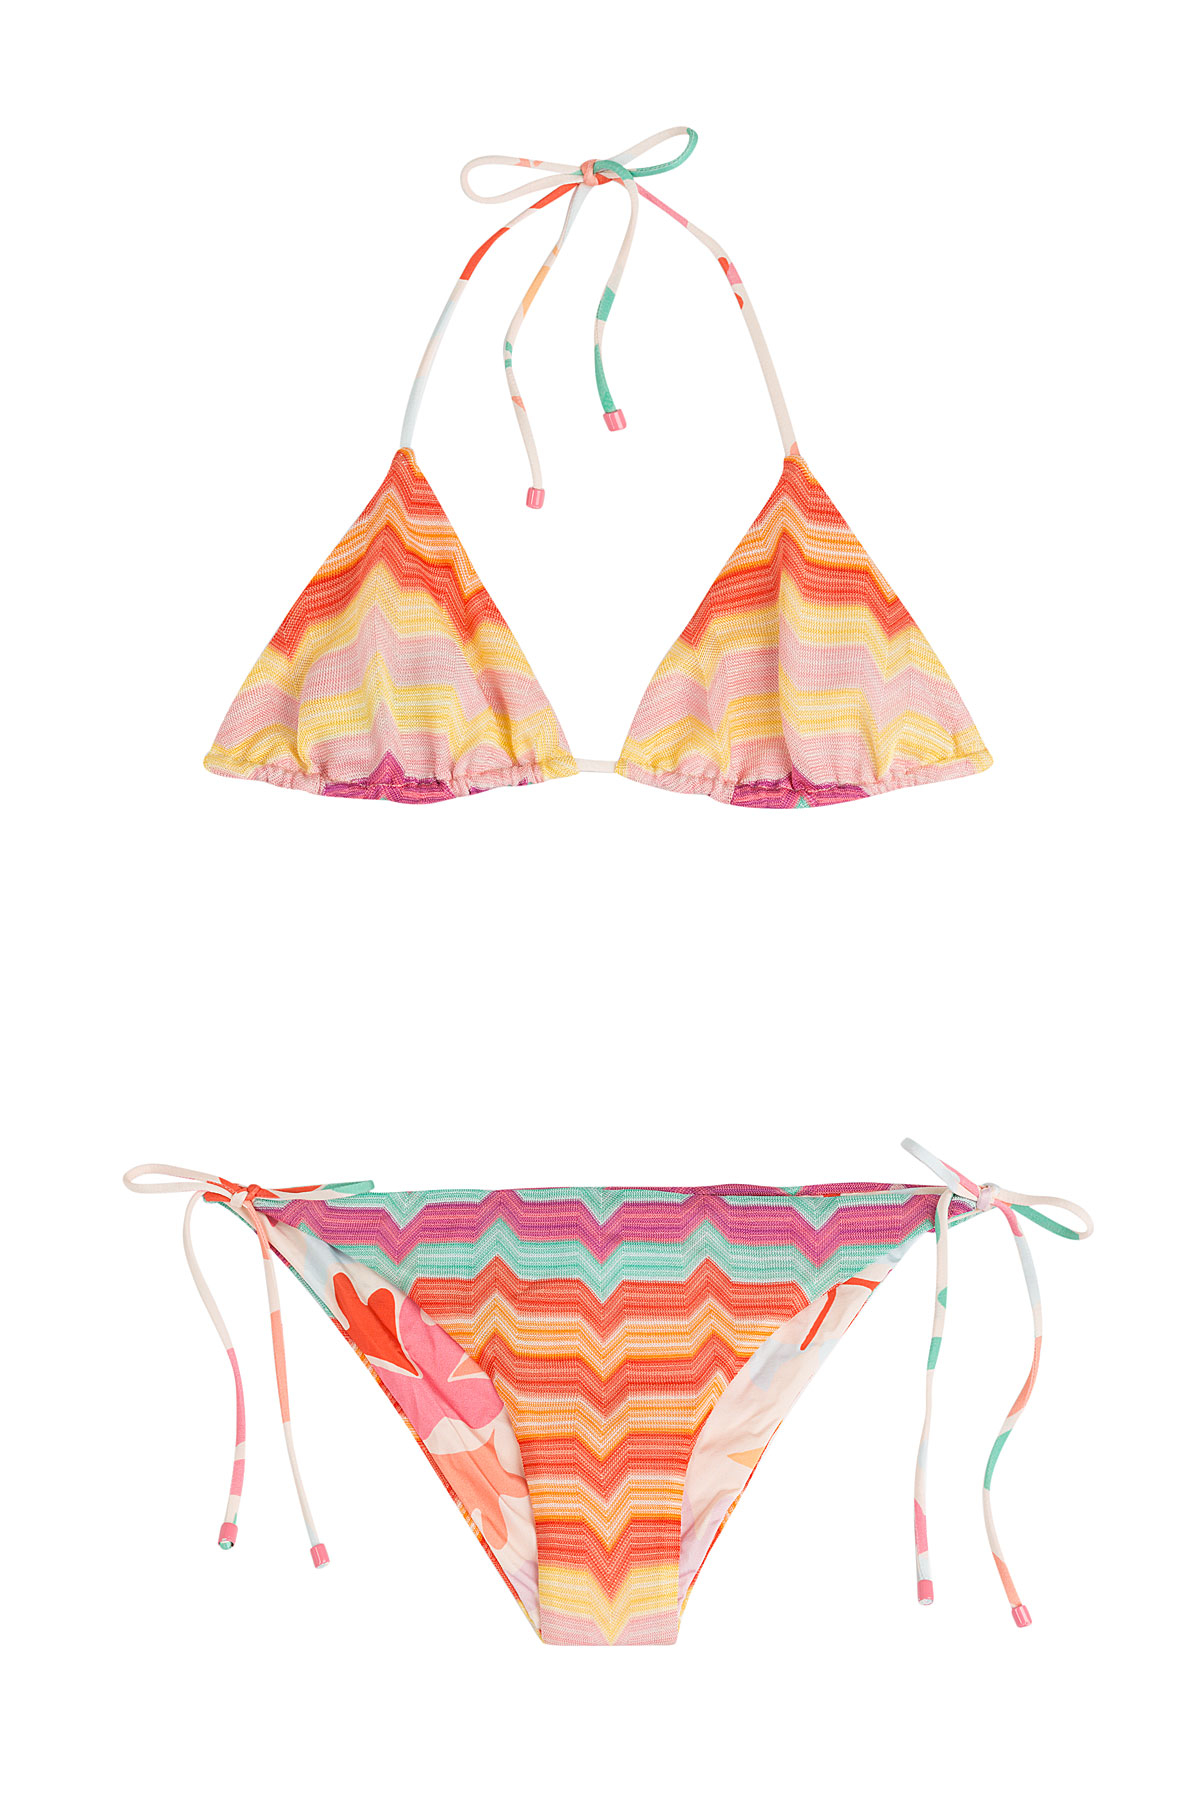 Missoni Reversible Knit Triangle Bikini - Multicolor in Multicolor ...